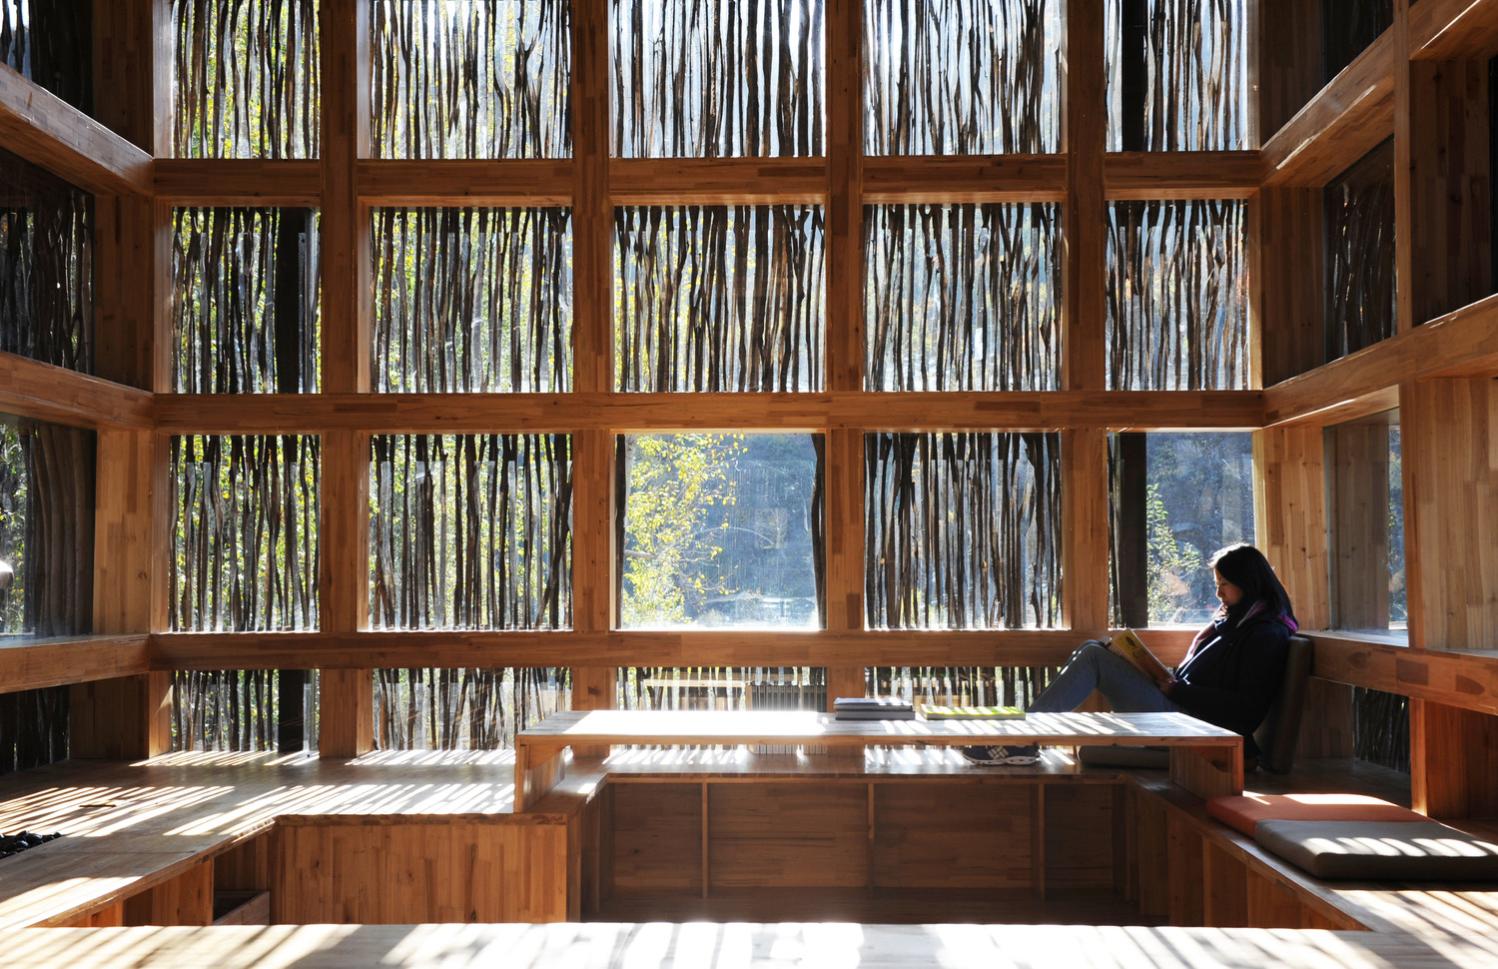 Liyuan Library - Interior view